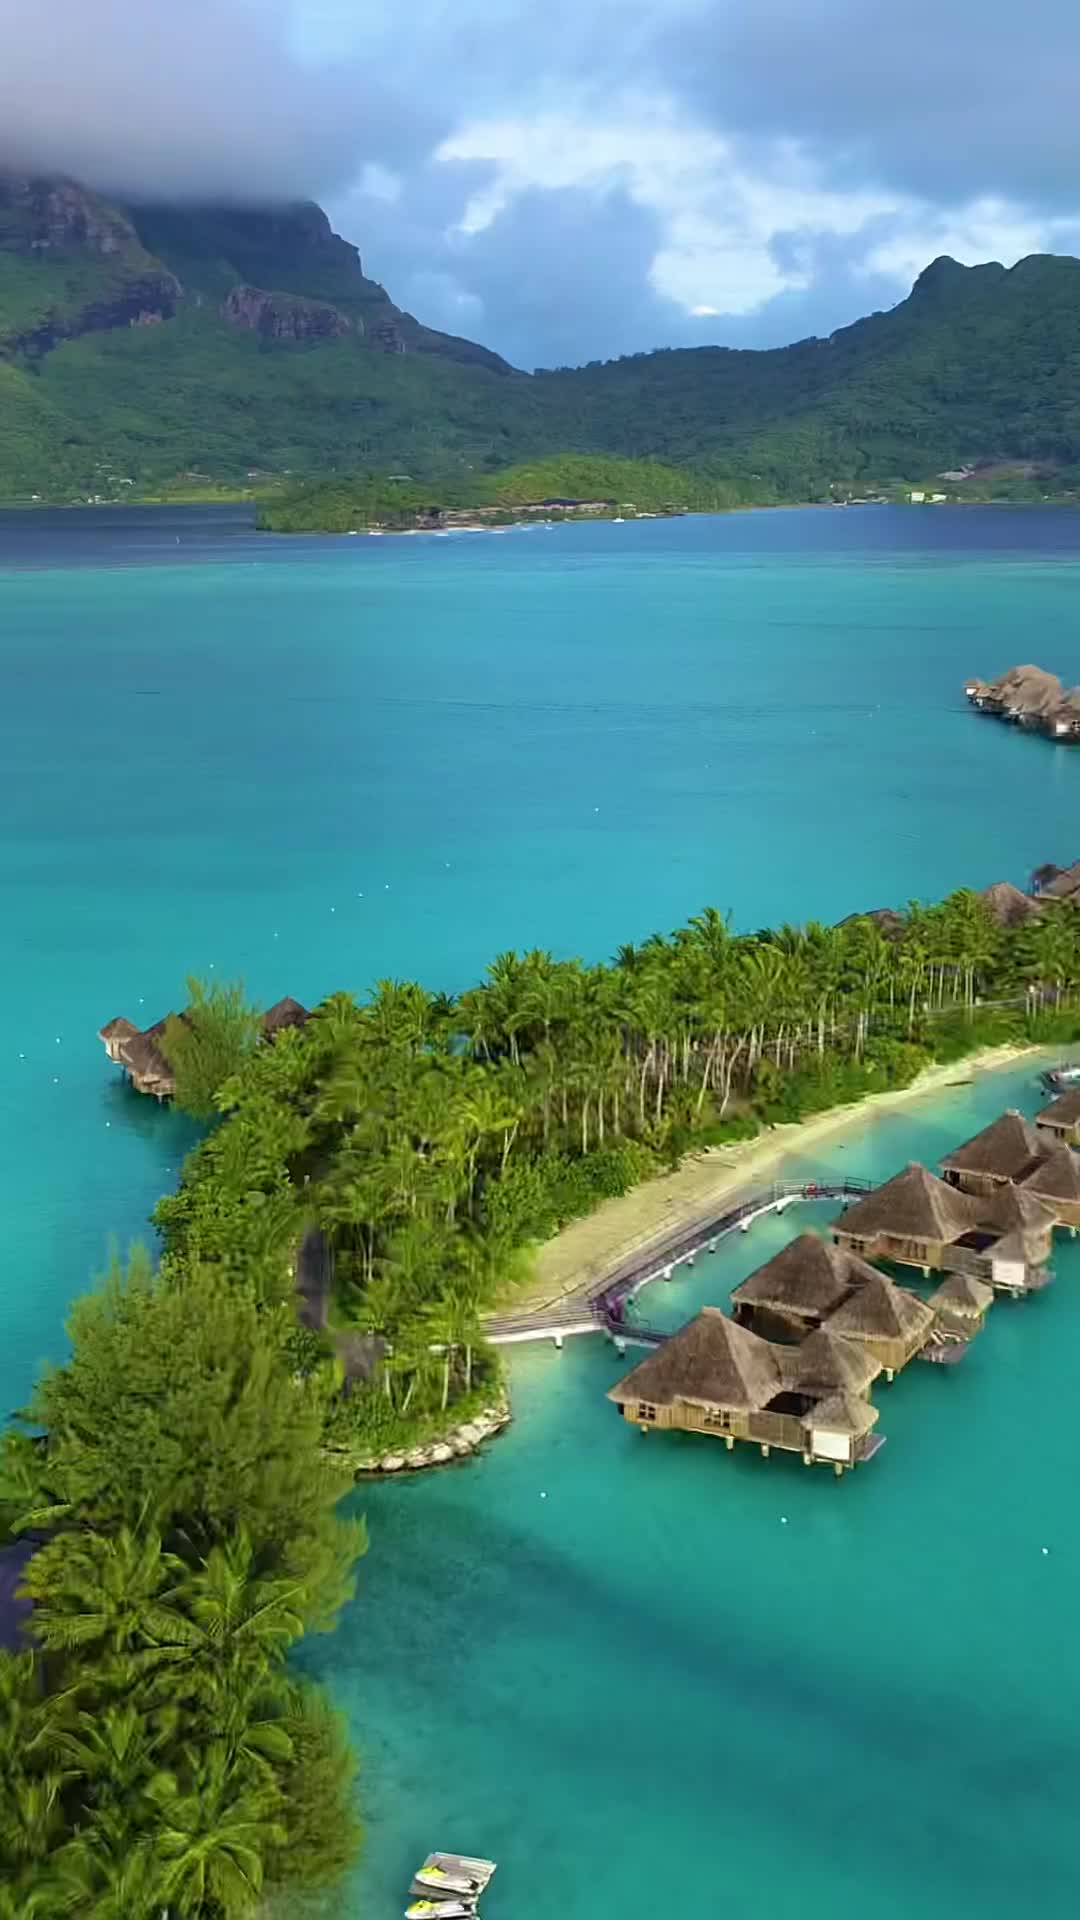 The Amazing St Regis Resort in Bora Bora